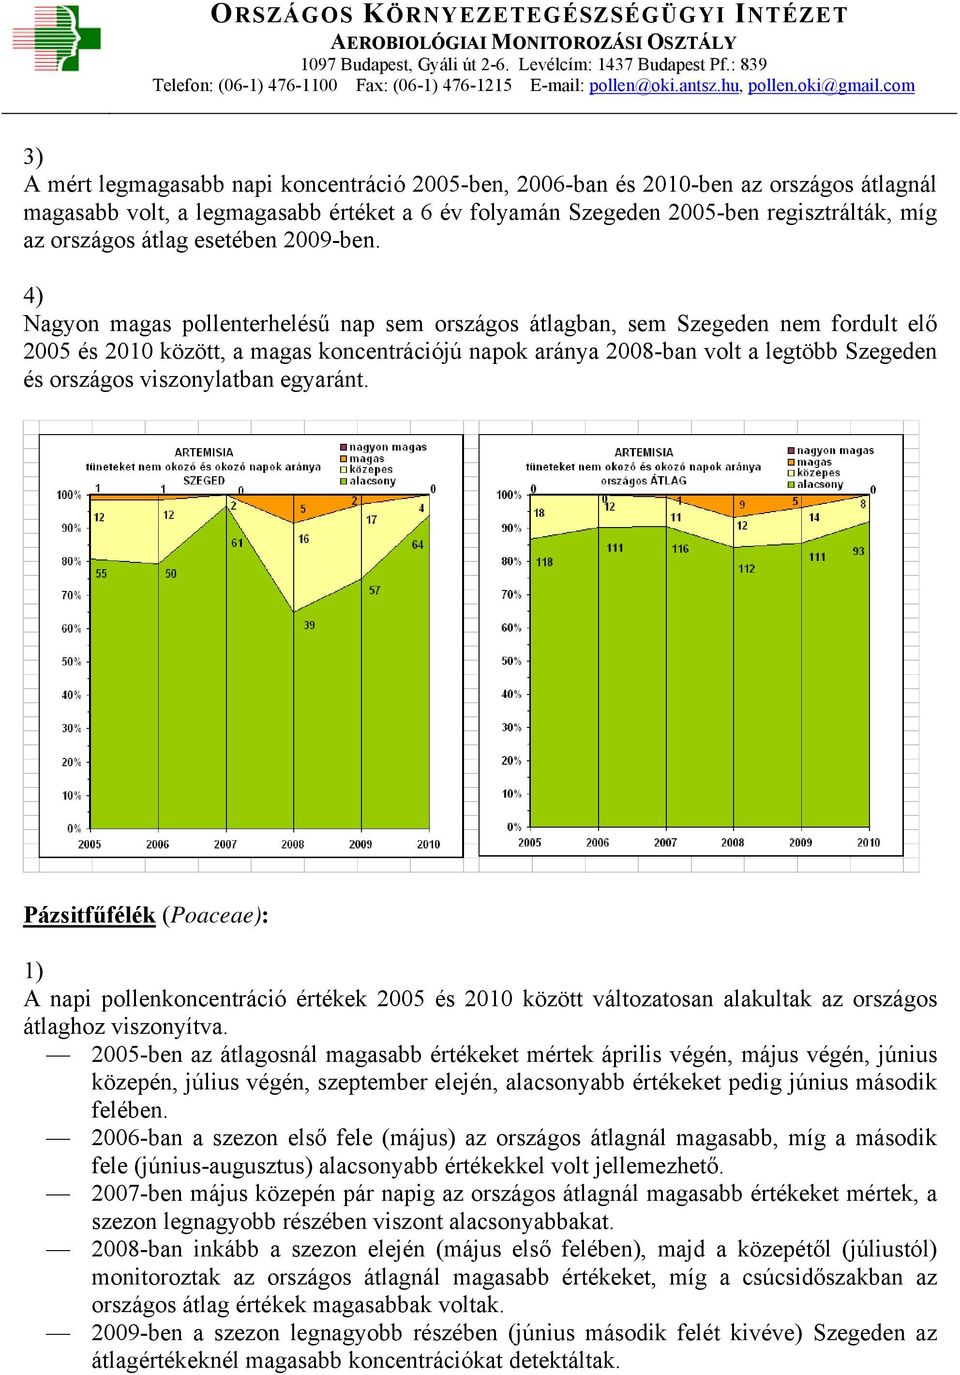 4) Nagyon magas pollenterhelésű nap sem országos átlagban, sem Szegeden nem fordult elő 2005 és 2010 között, a magas koncentrációjú napok aránya 2008-ban volt a legtöbb Szegeden és országos